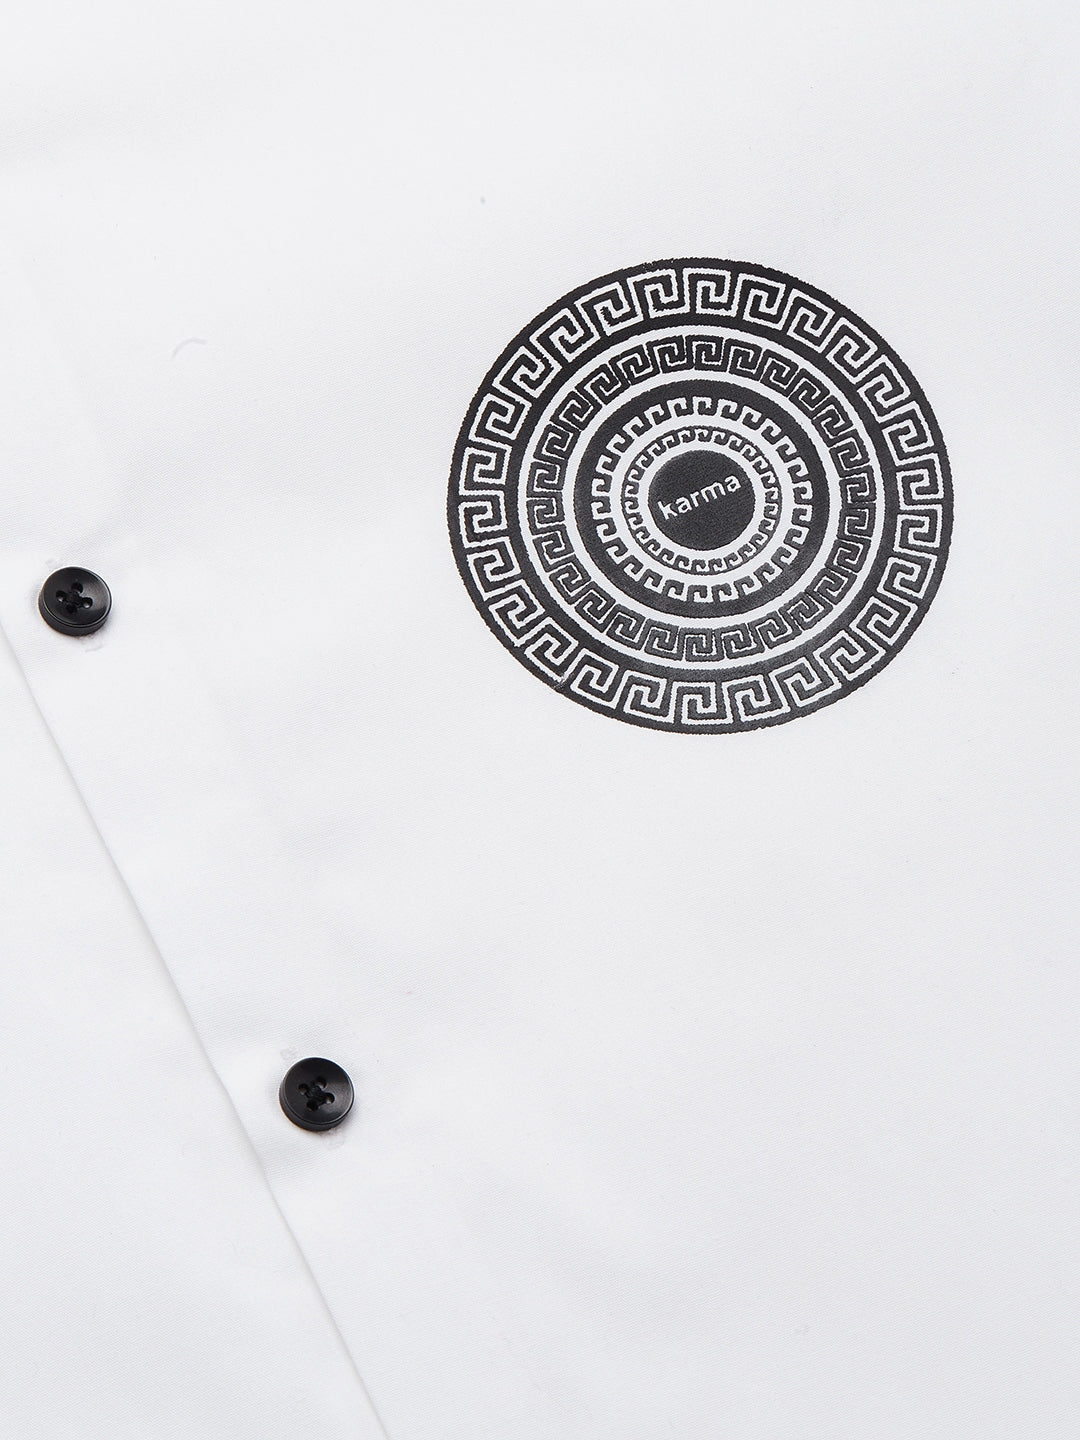 Jainish Men's Cotton Printed Formal Shirts